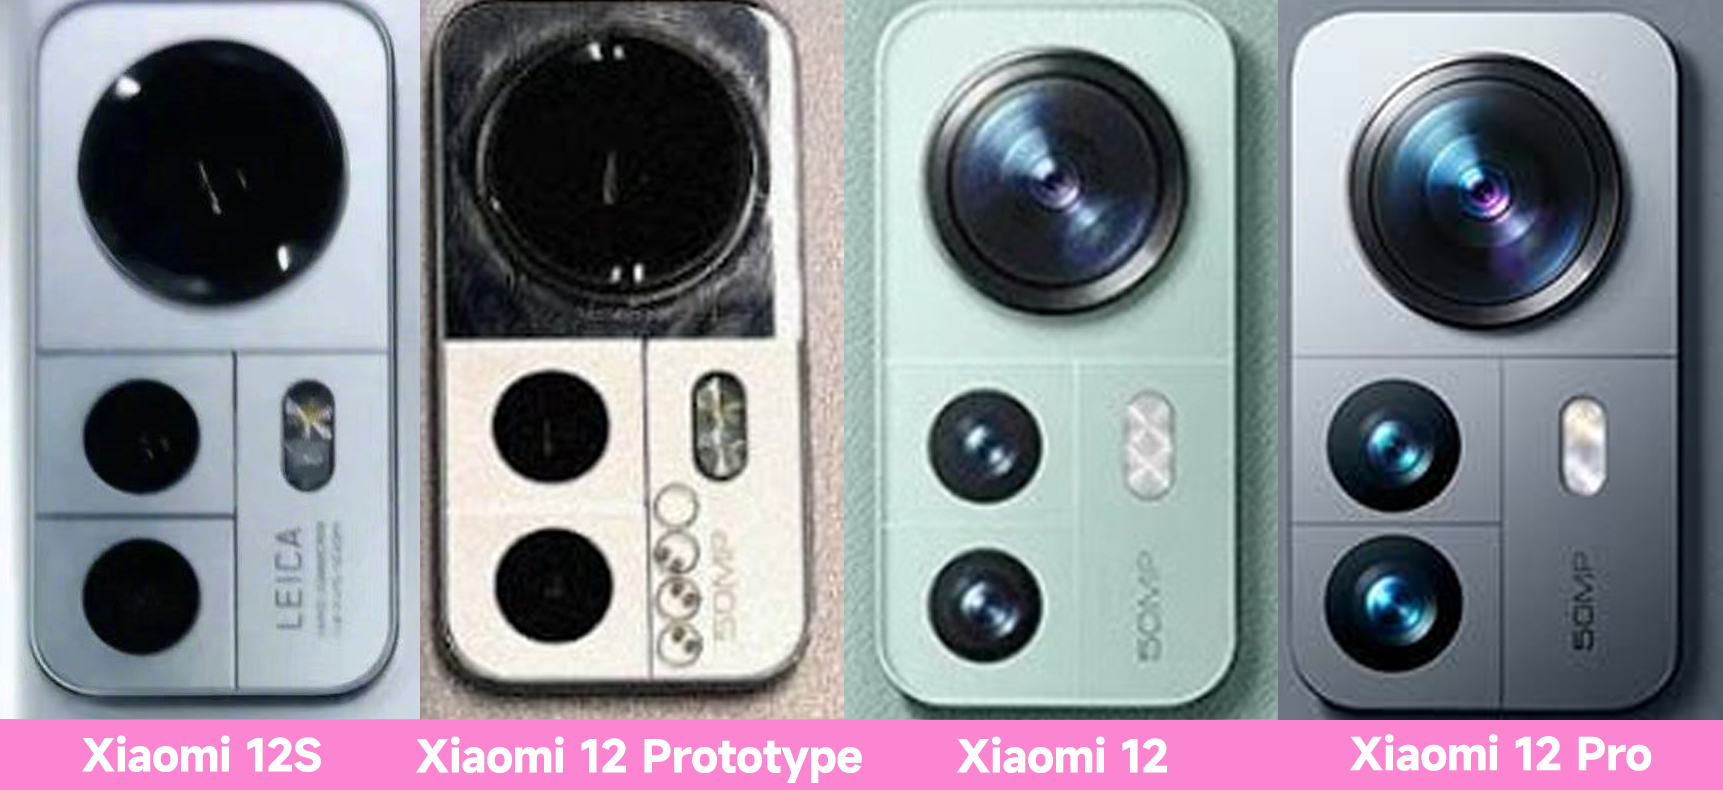 Xiaomi 12 series camera comparison